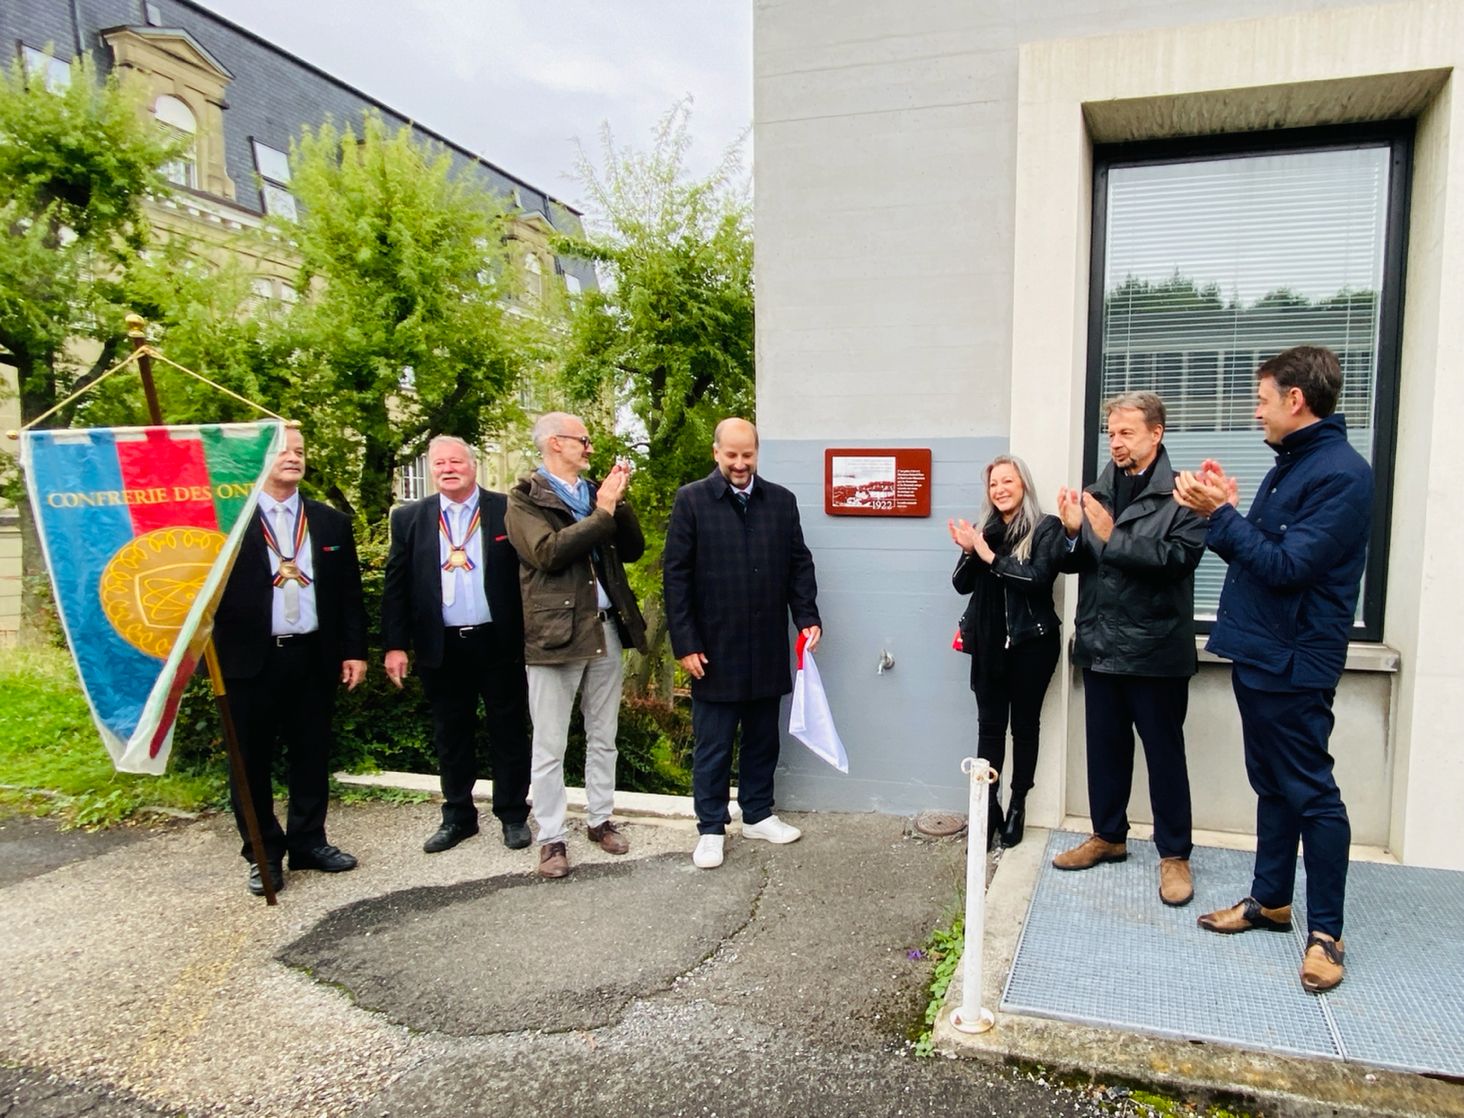 Inauguration d'une plaque commémorative à l'occasion des 100 ans de la radio à Lausanne